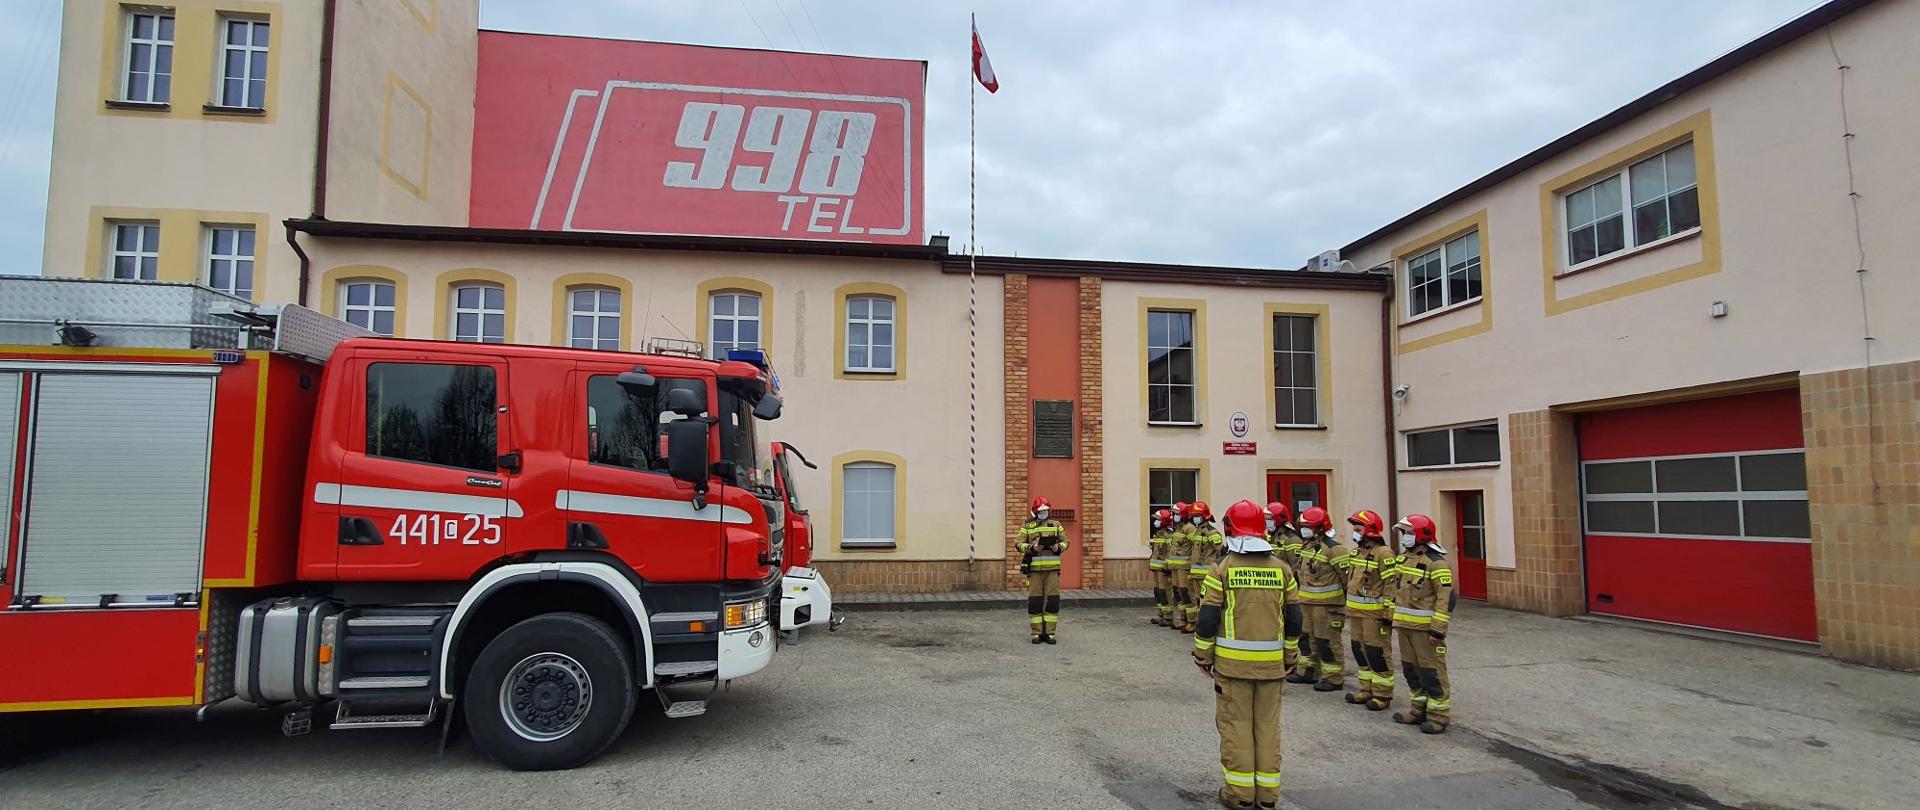 Na zdjęciu po prawej widoczni strażacy ubrani w piaskowe ubranie specjalne i czerwone hełmy podczas zbiórki. Po lewej stronie widoczna przednia część ciężarowego czerwono – białego samochodu gaśniczego. W tle budynek komendy z masztem, na którym powiewa flaga Polski.